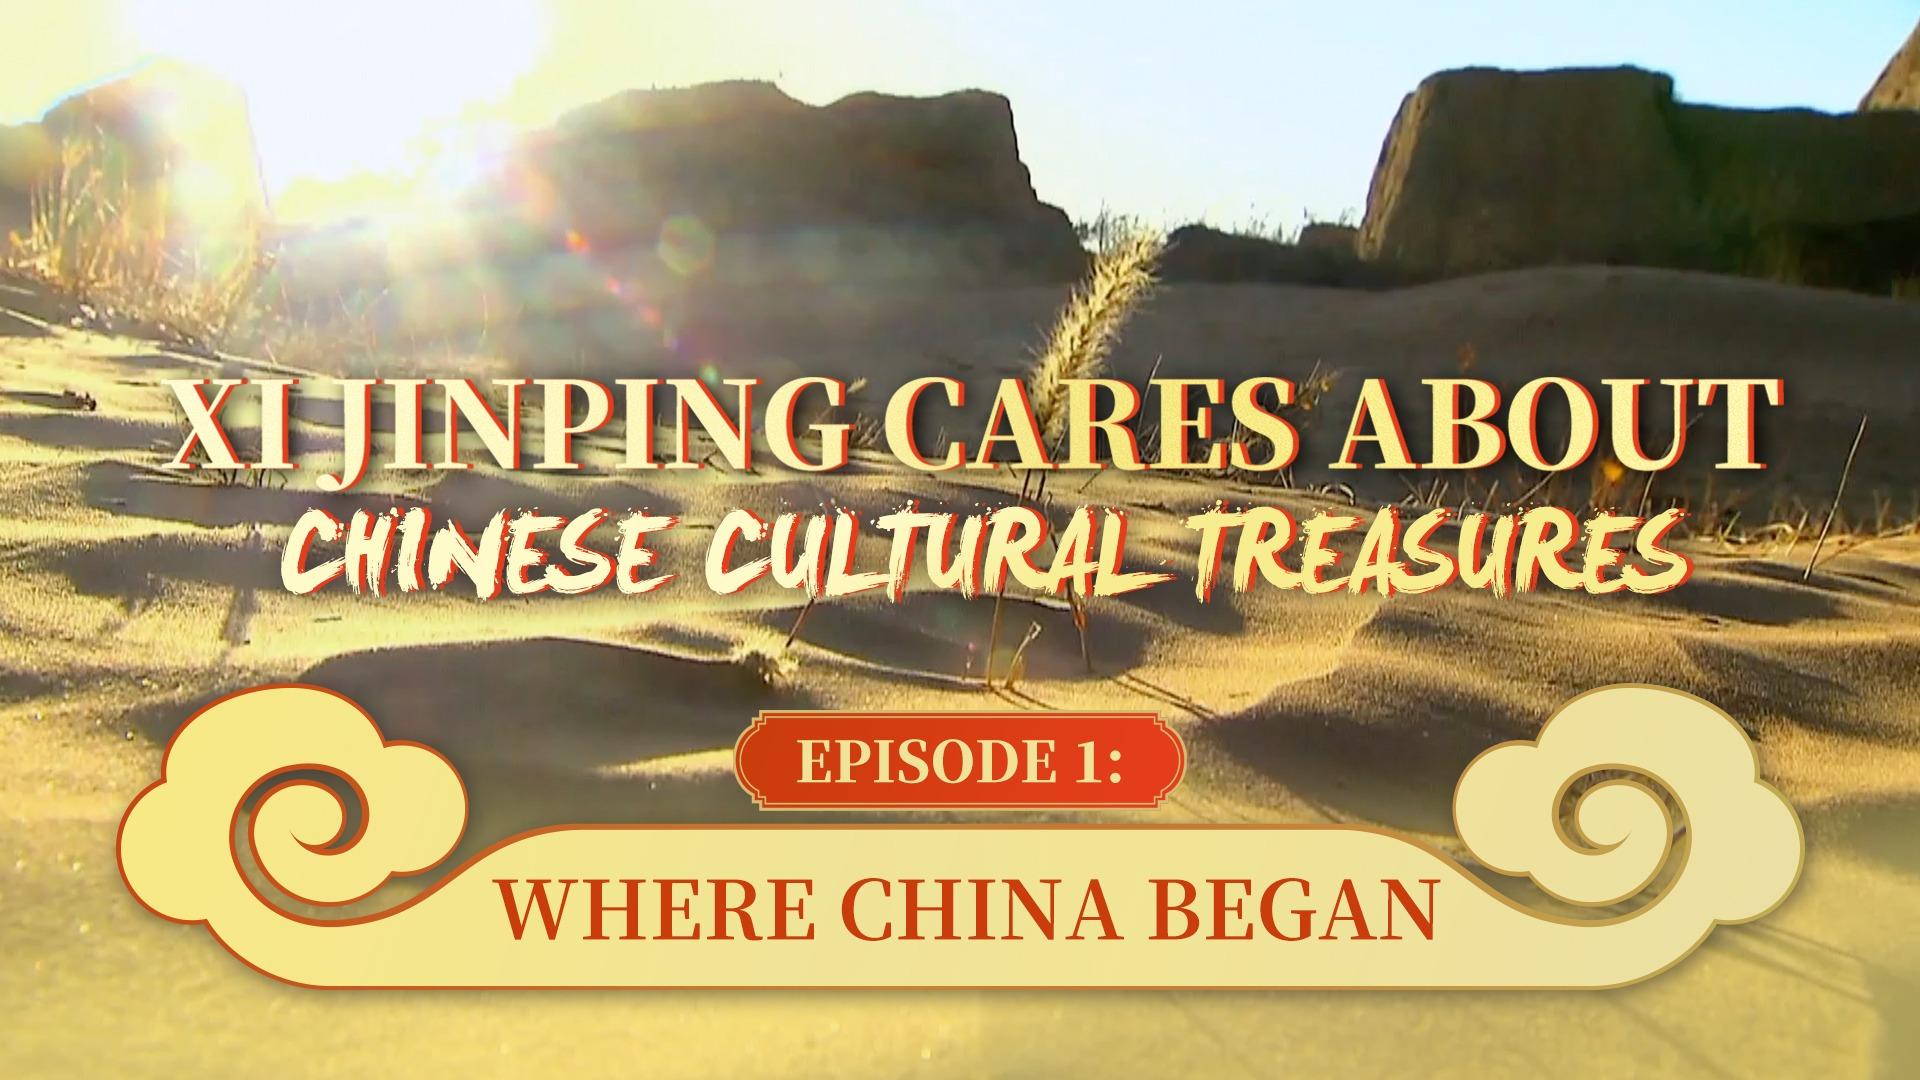 گنجینه های فرهنگی چین و رئیس جمهور «شی جین پینگ»| جایی که چین آغاز شد